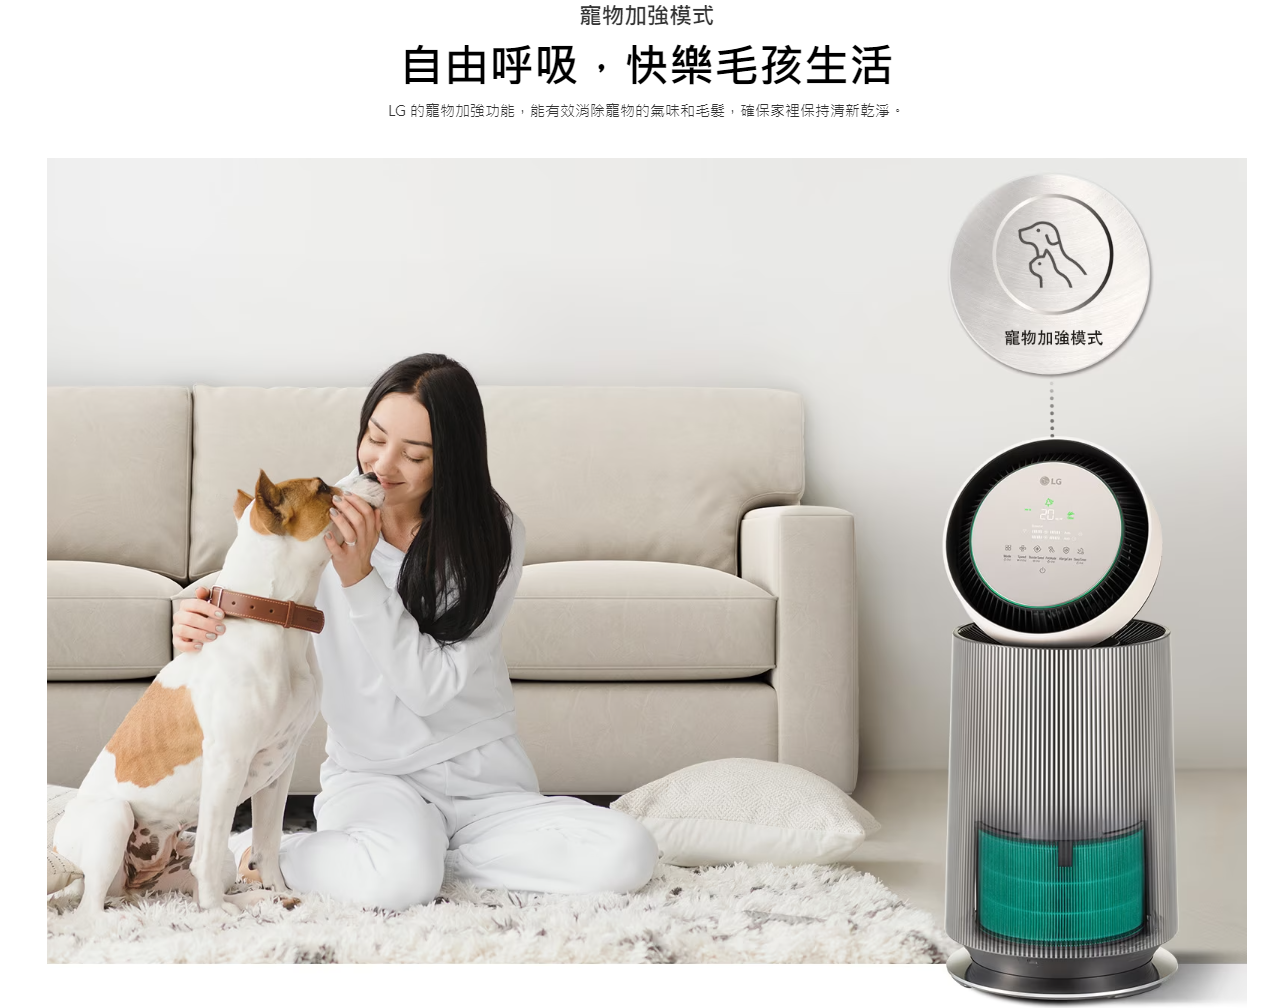 【樂昂客】LG 樂金 AS651DBY0 空氣清淨機  寵物功能增加版二代 適19坪單層 奶茶棕